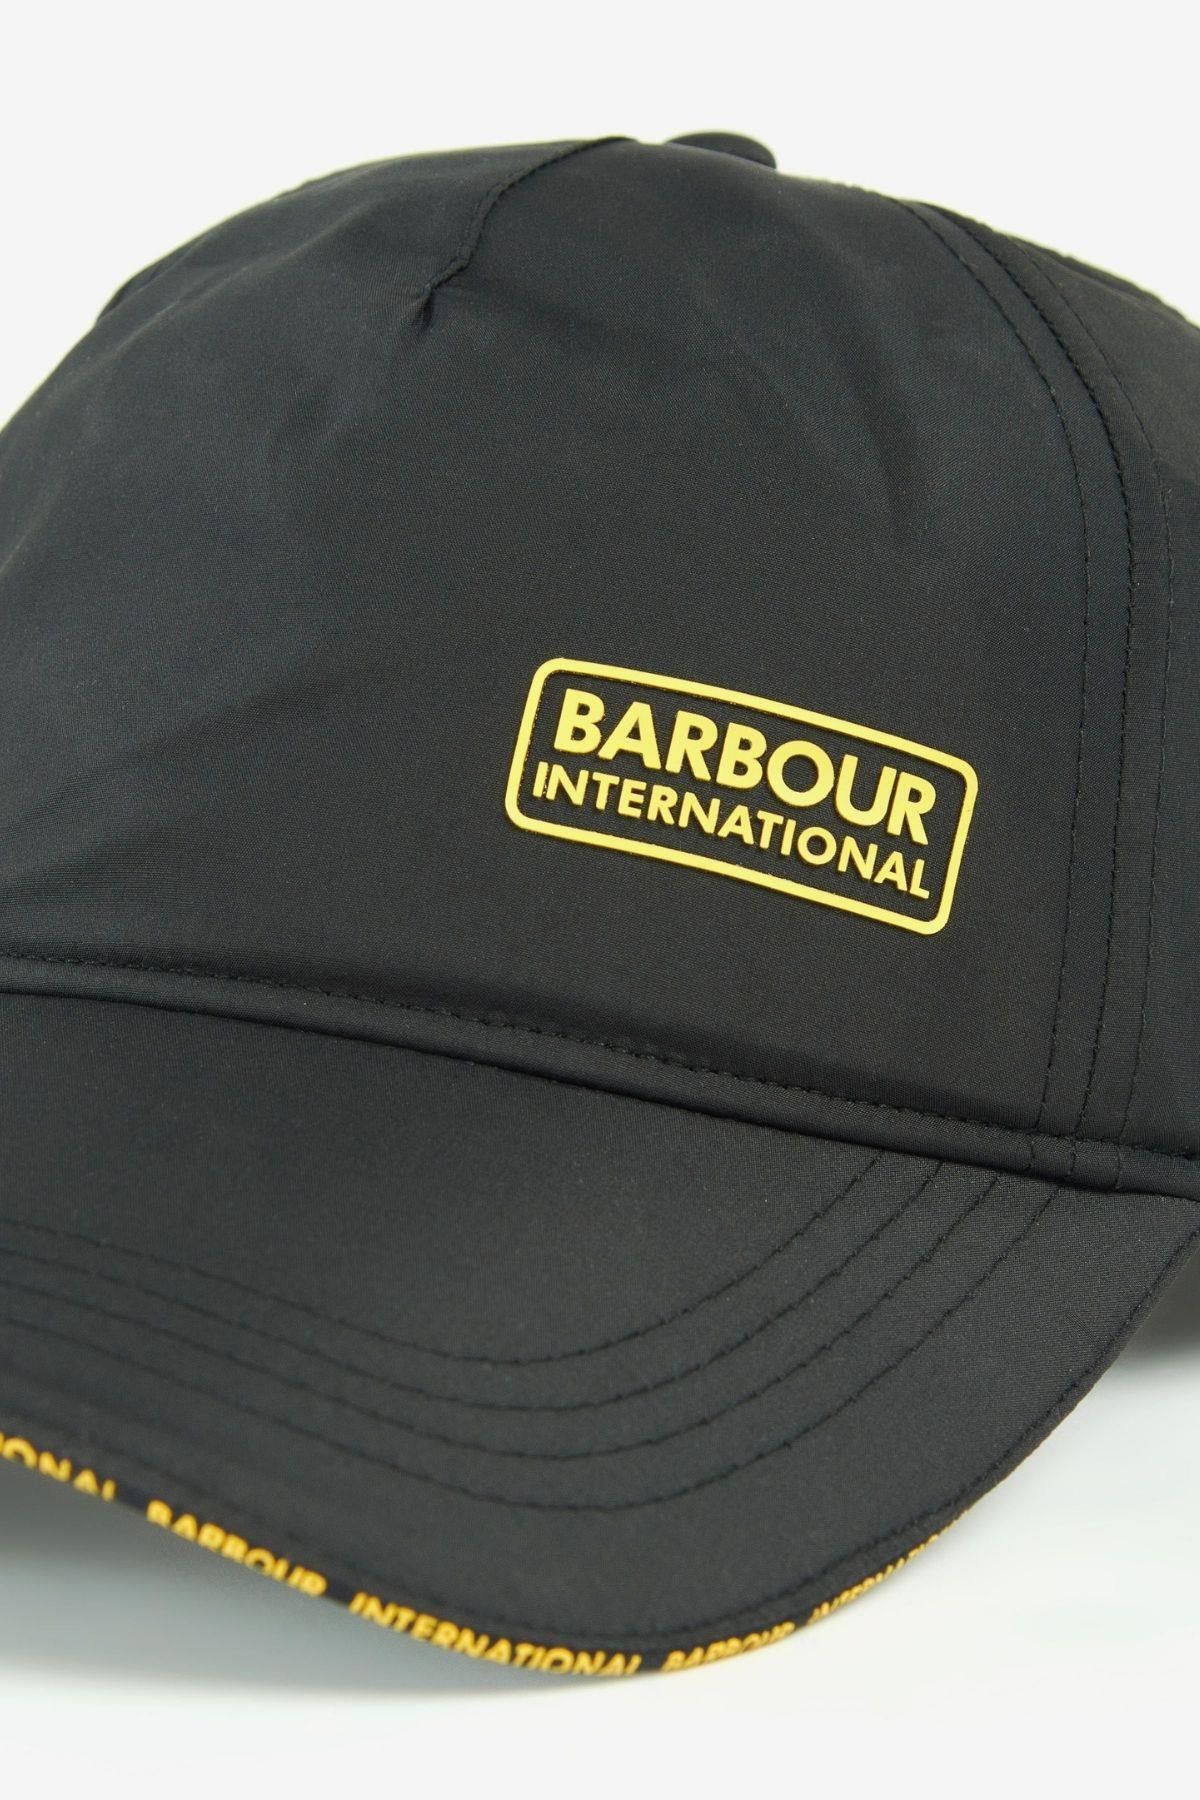 Barbour B.Intl Formula Sports Hat BK11 Black